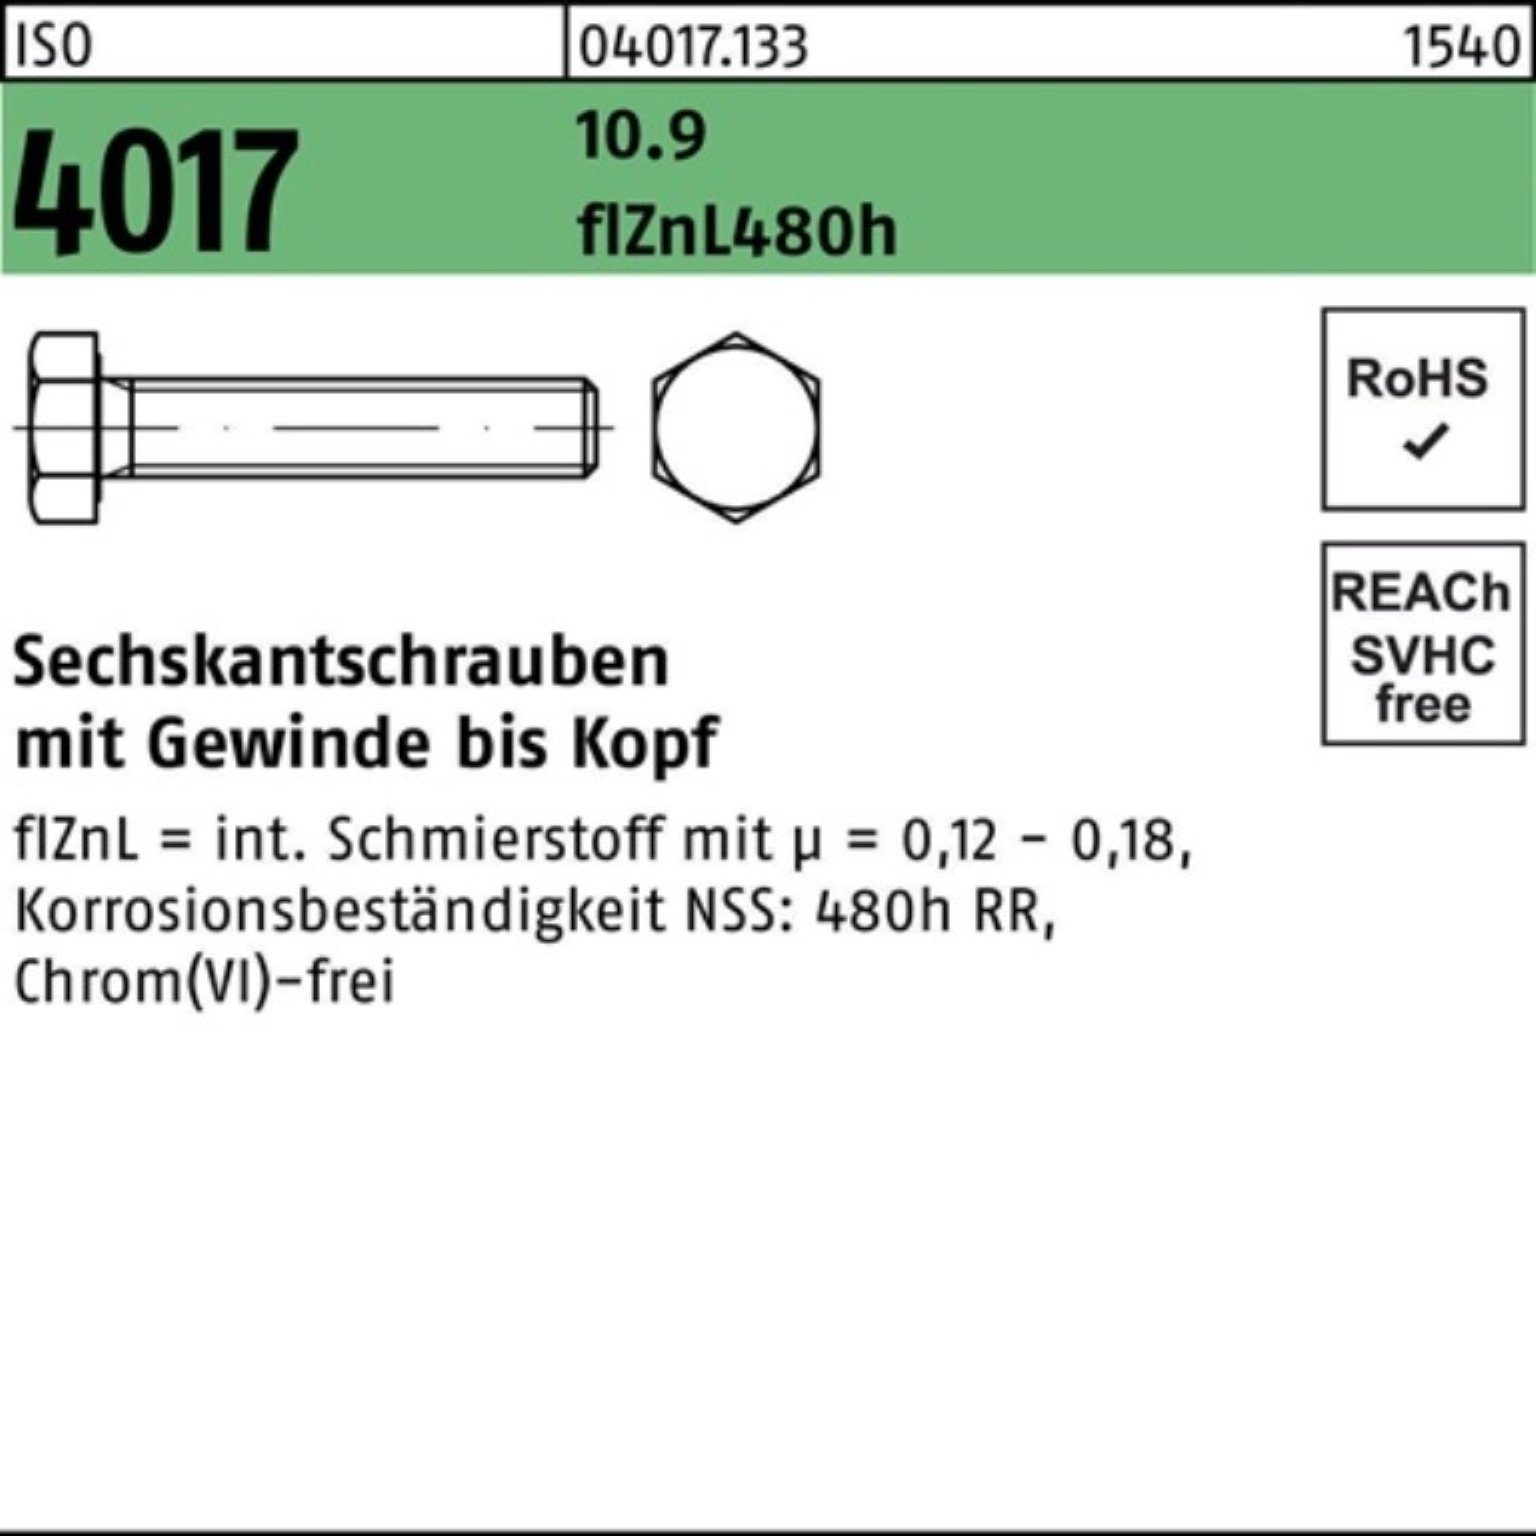 Bufab Sechskantschraube 200er Pack M8x 4017 Sechskantschraube ISO 20 zinklamellenb. 10.9 25 VG